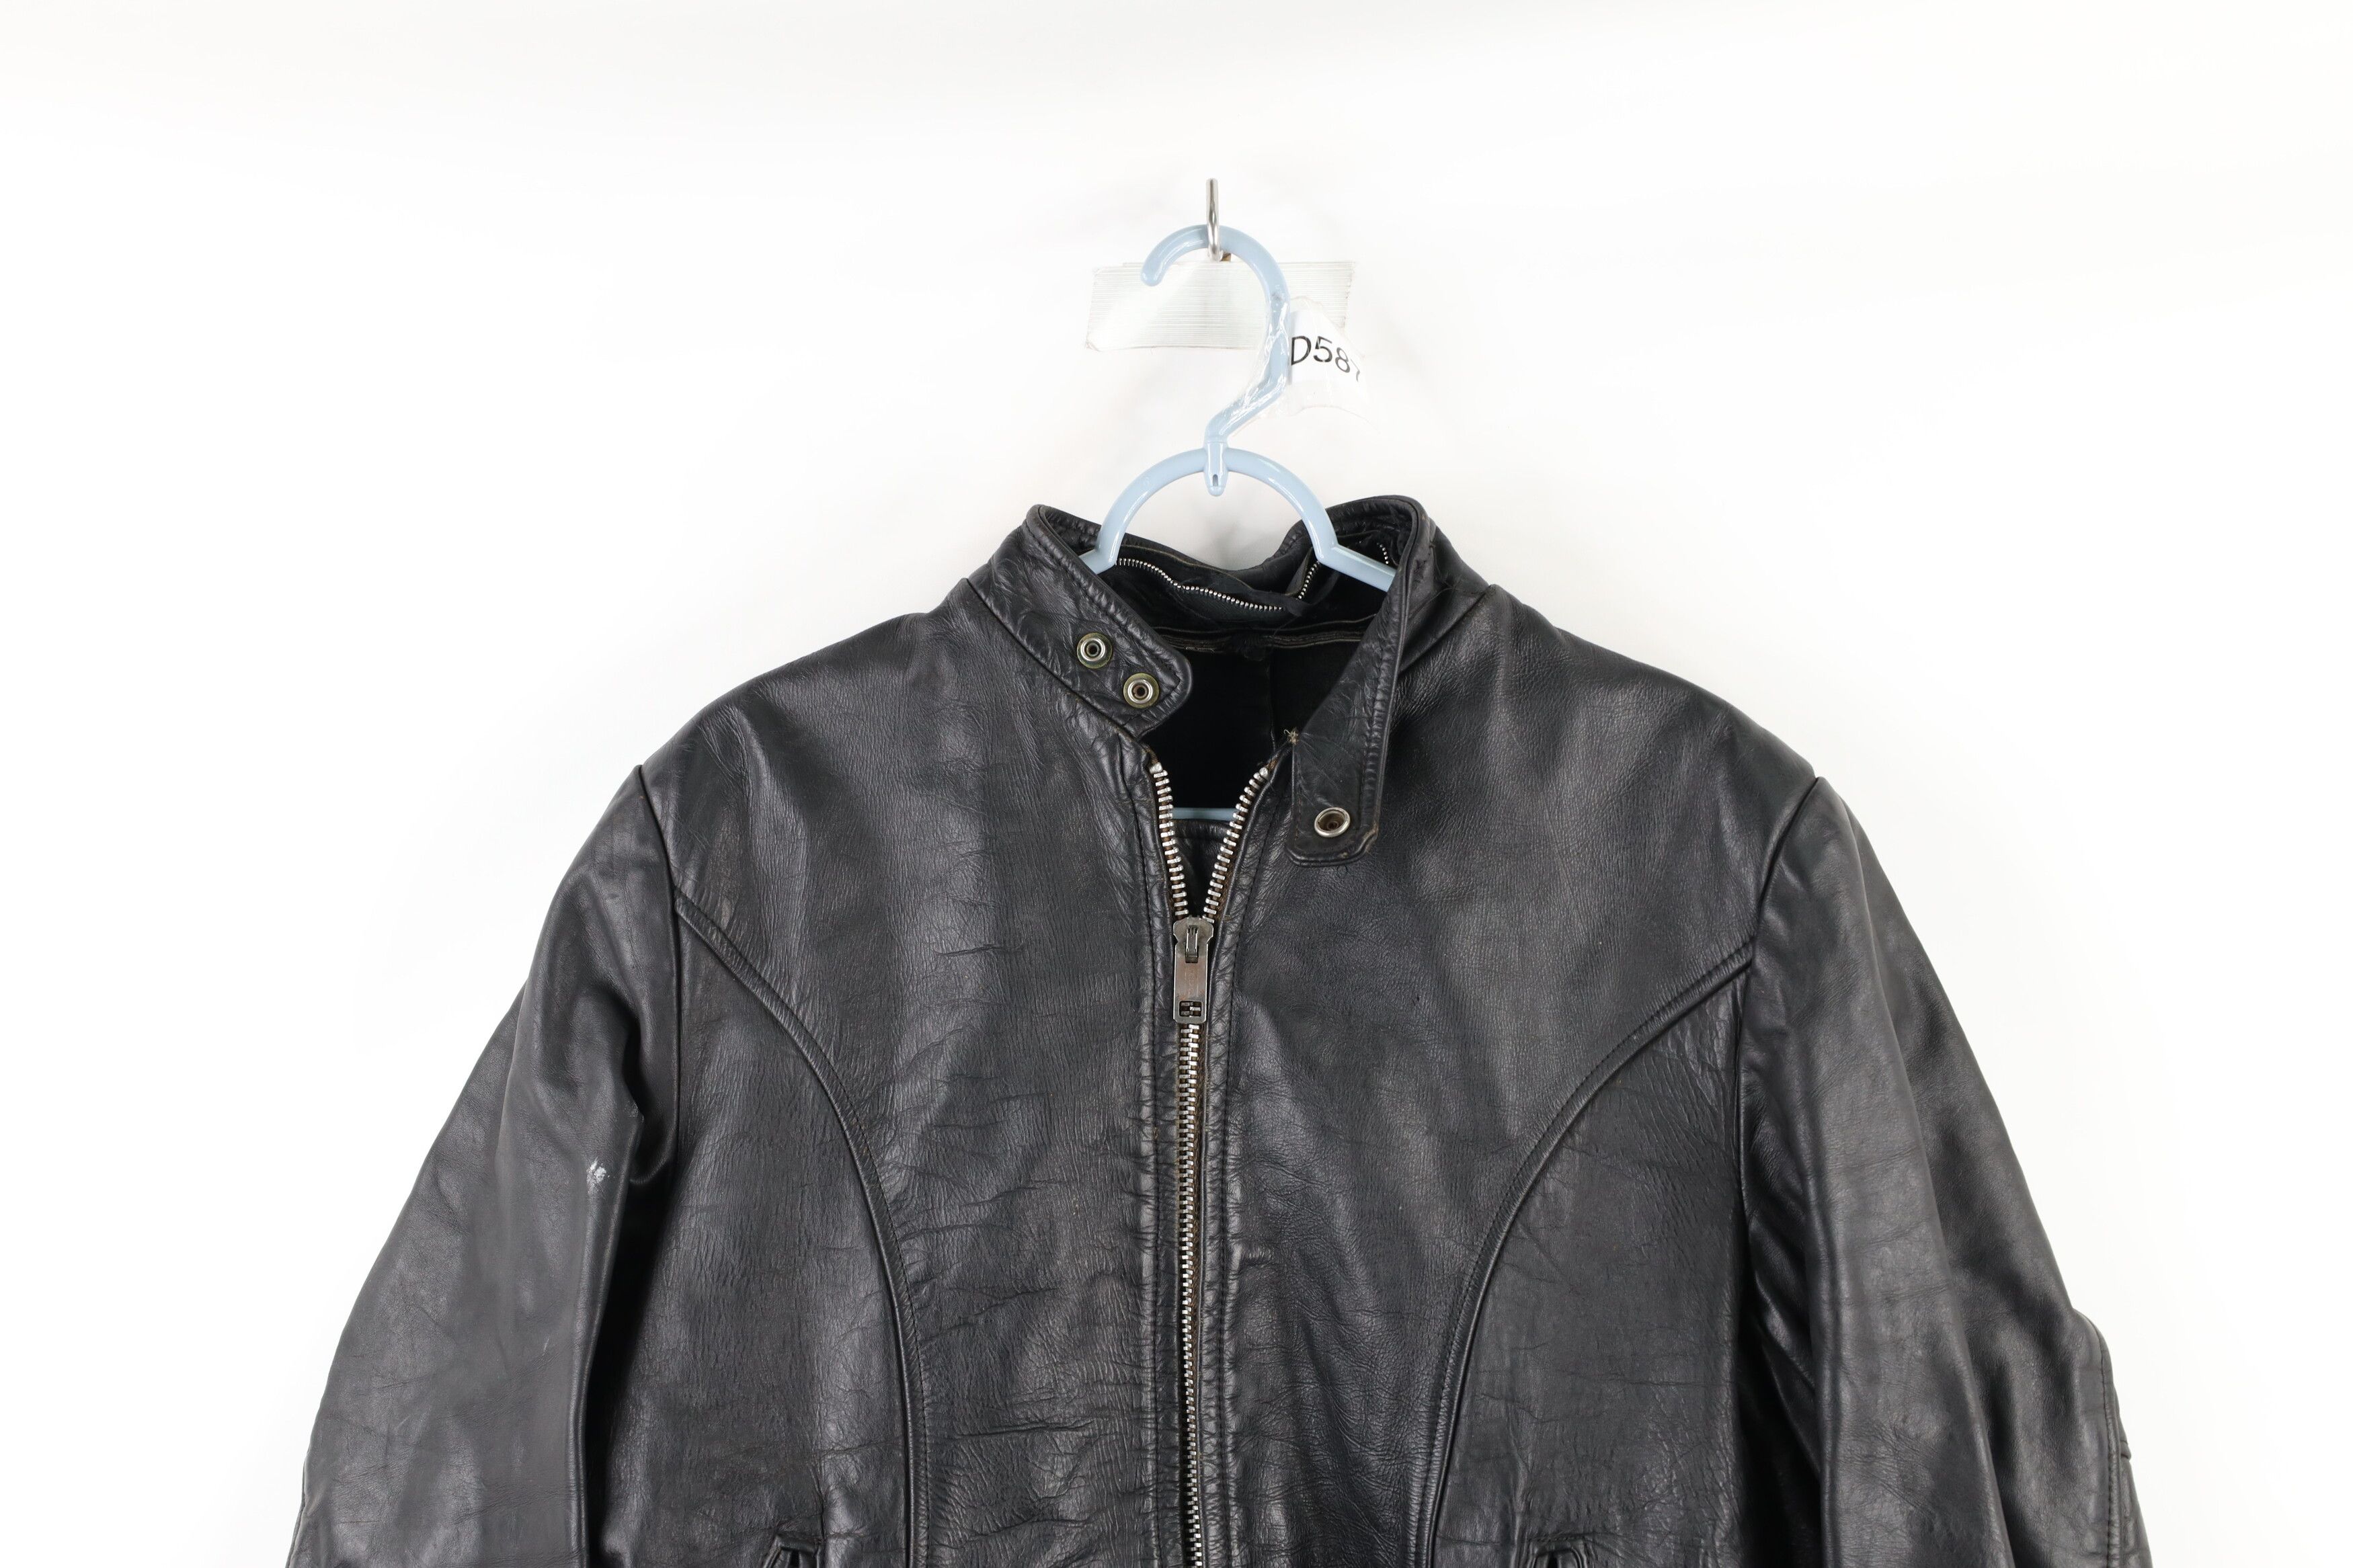 Vintage Vintage 70s Leather Cafe Racer Motorcycle Jacket Black USA Size US L / EU 52-54 / 3 - 2 Preview